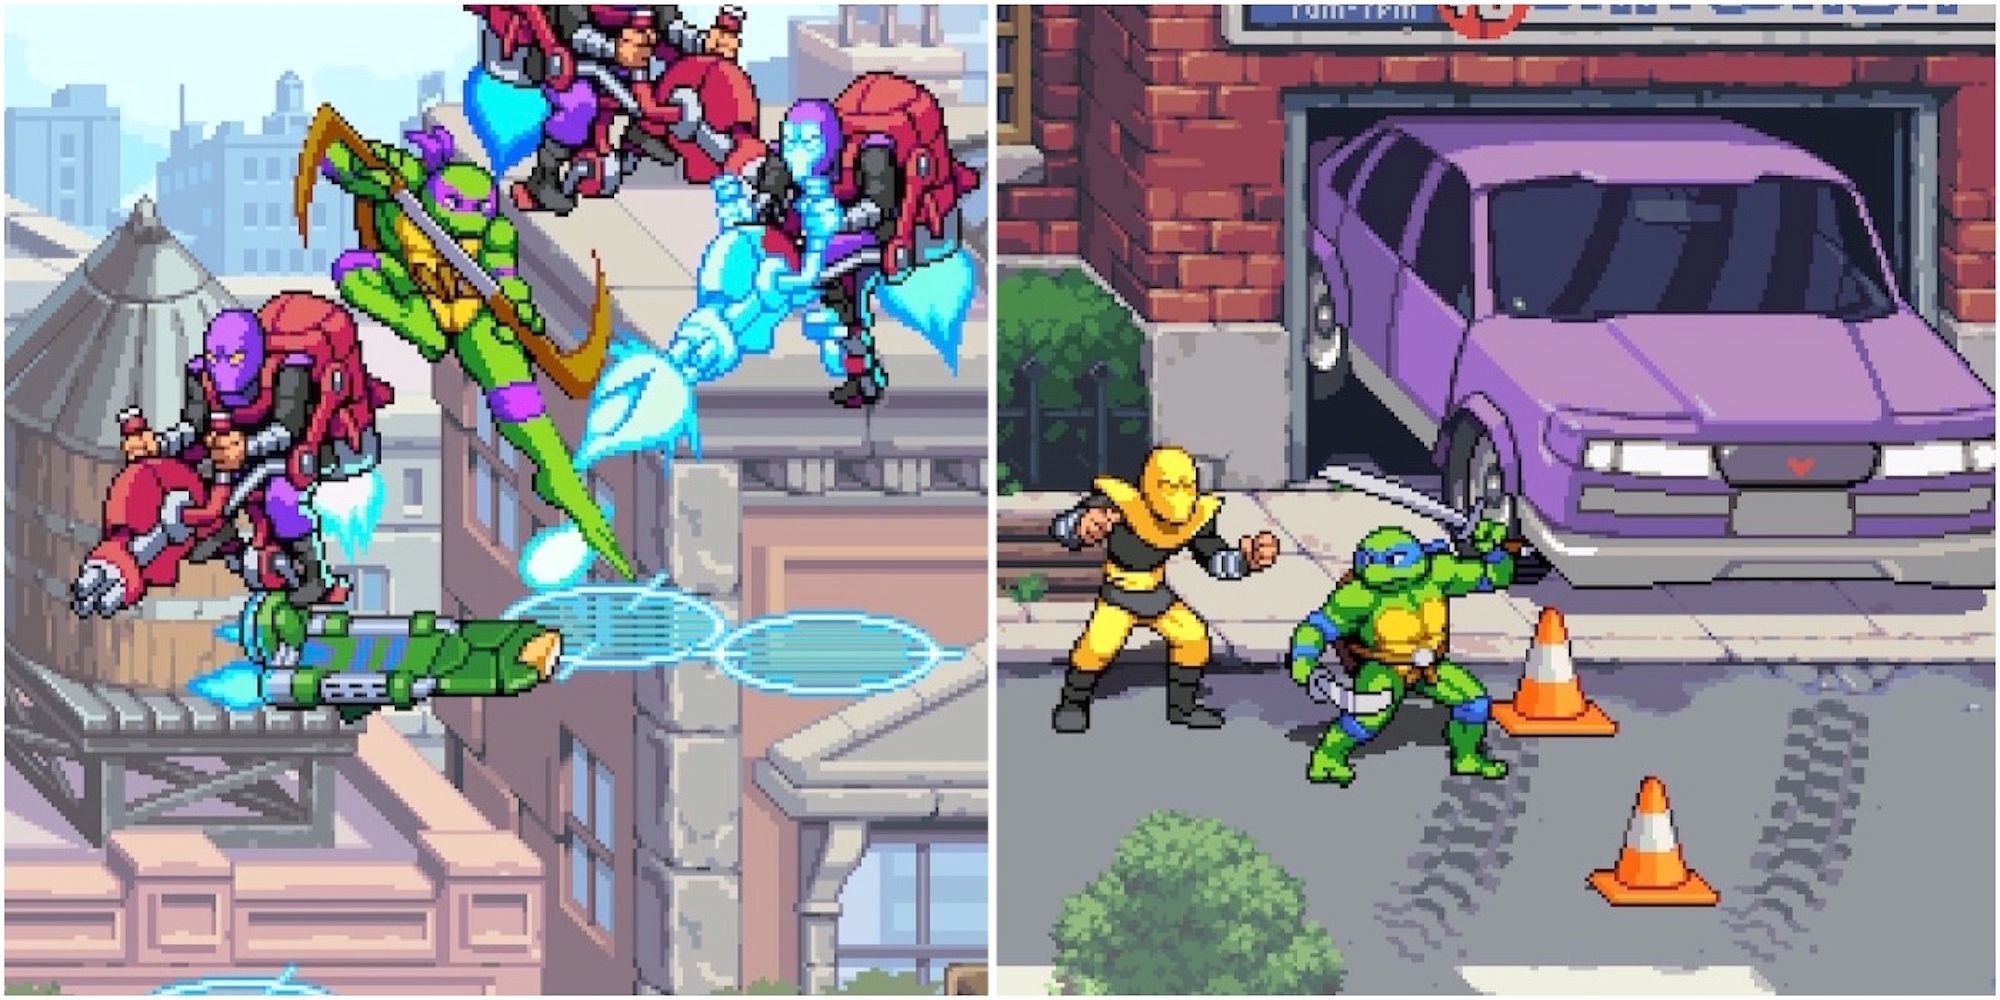 Fighting enemies in Teenage Mutant Ninja Turtles Shredder's Revenge